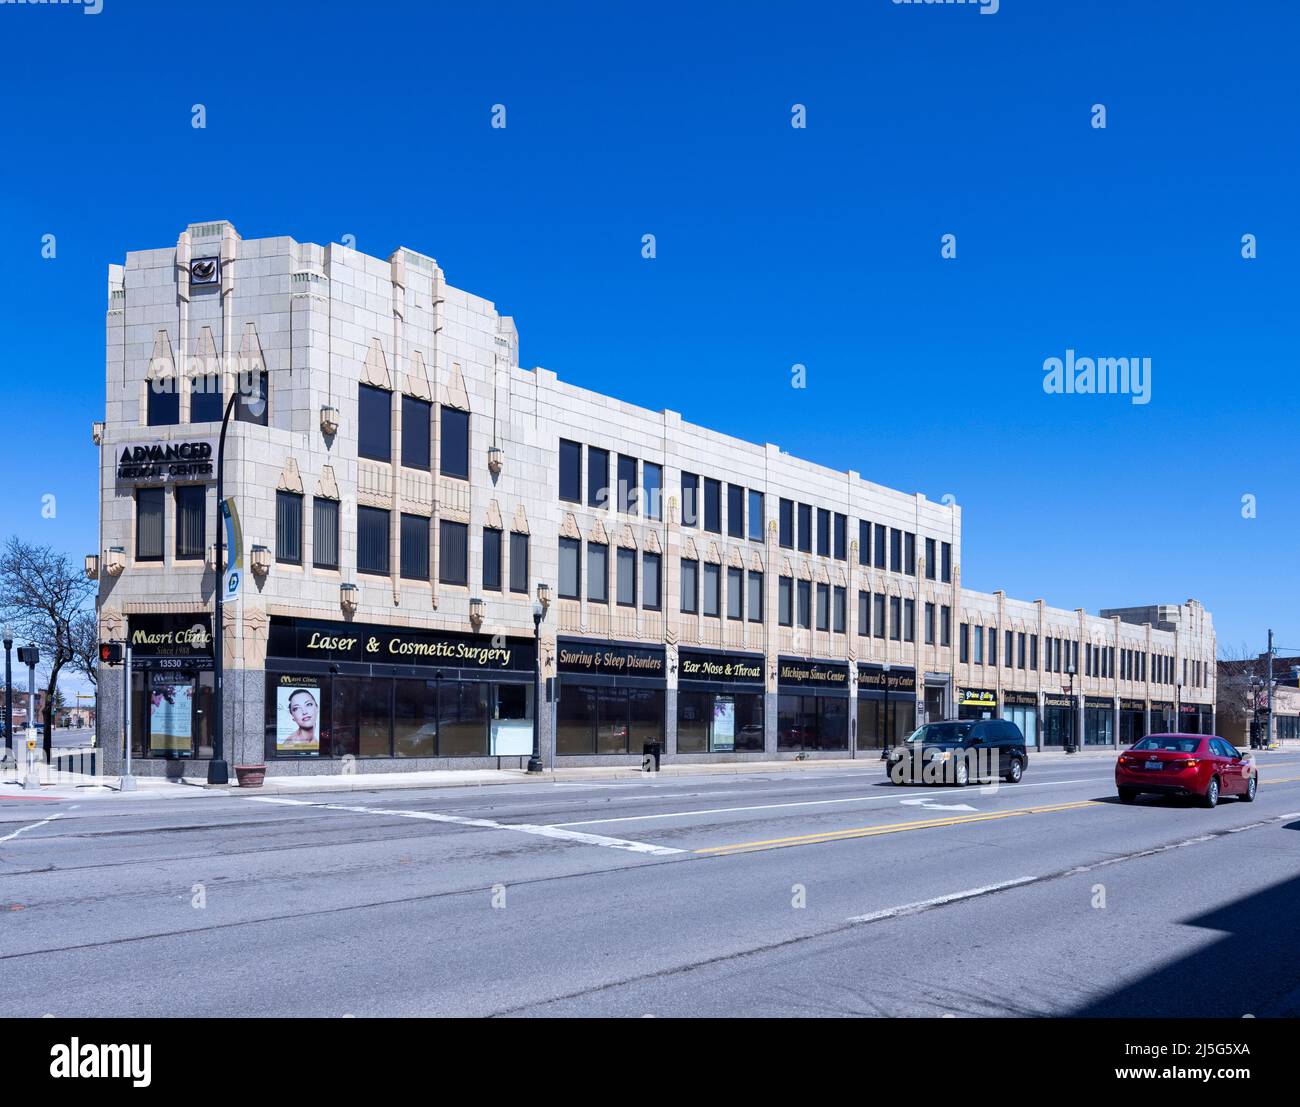 El edificio John H. Schaefer, estilo art deco, ahora Advanced Urgent Care, Dearborn, Michigan, Estados Unidos Foto de stock